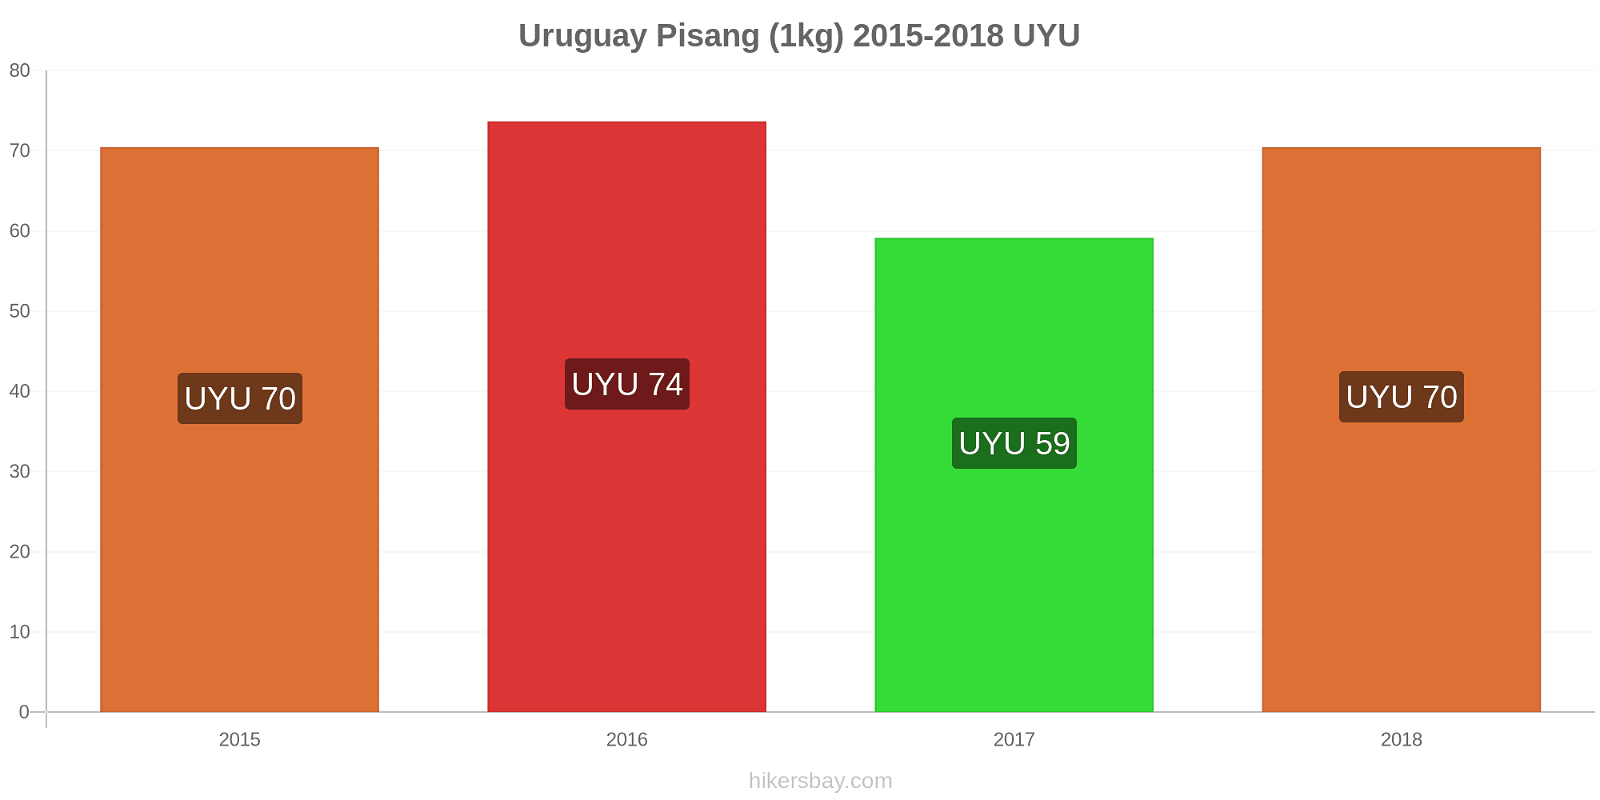 Uruguay perubahan harga Pisang (1kg) hikersbay.com